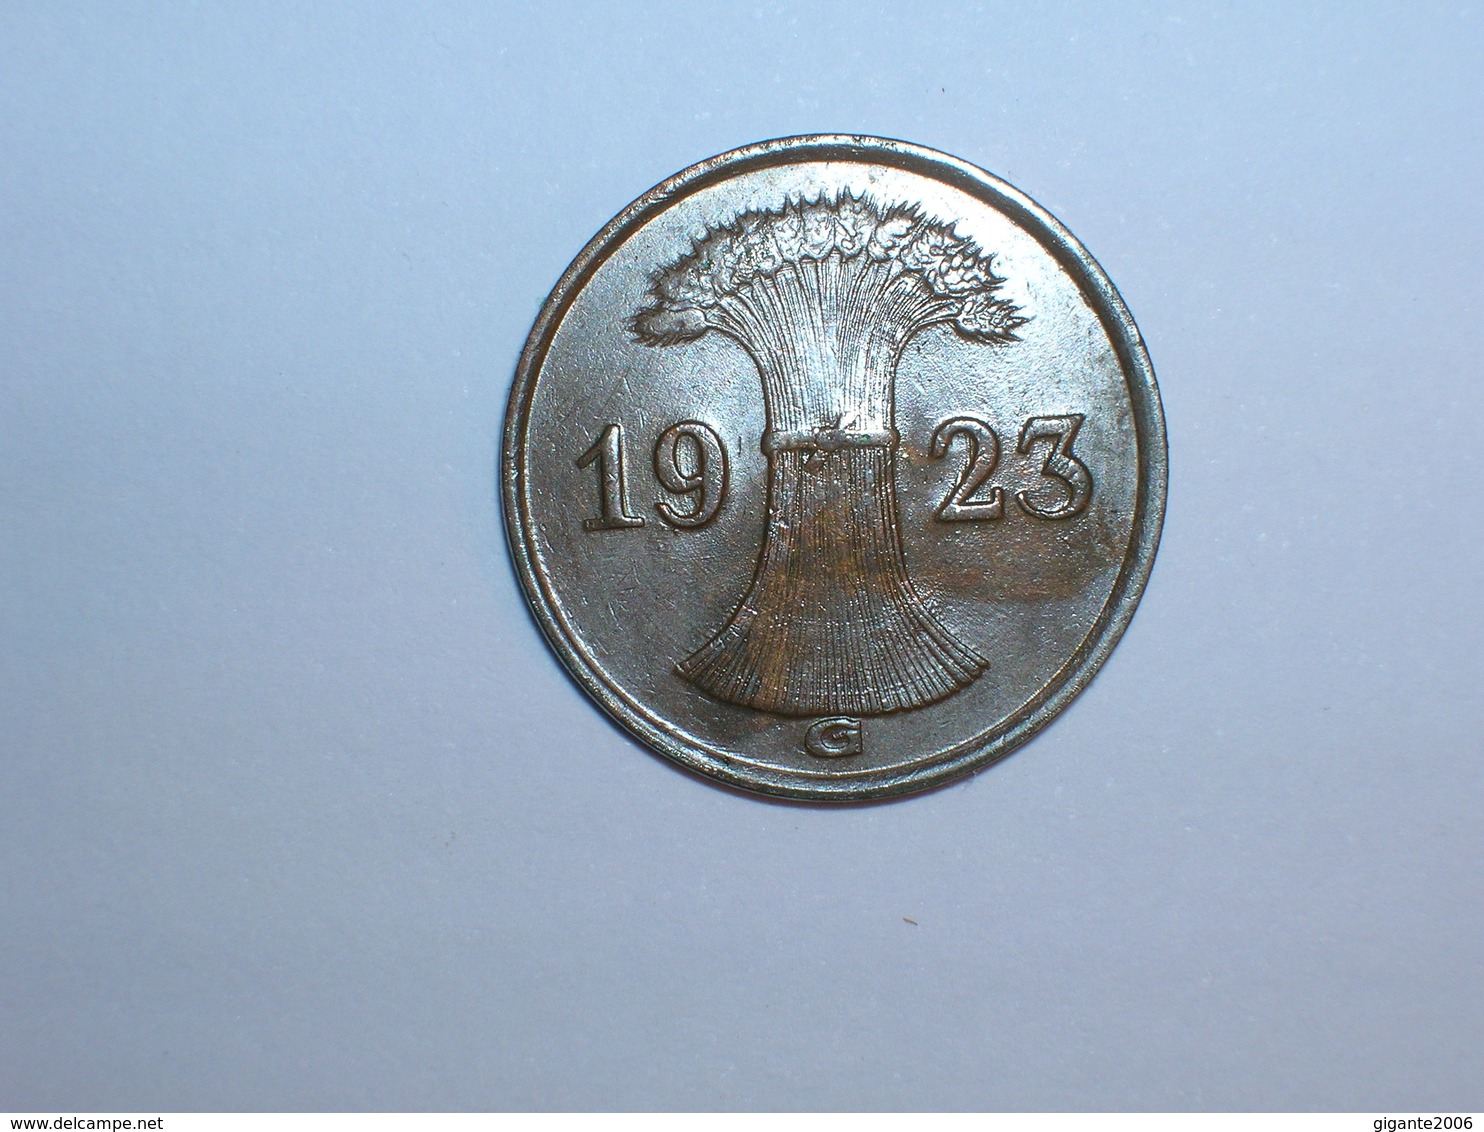 ALEMANIA 1 RENTENPFENNIG 1923 G (1086) - 1 Rentenpfennig & 1 Reichspfennig